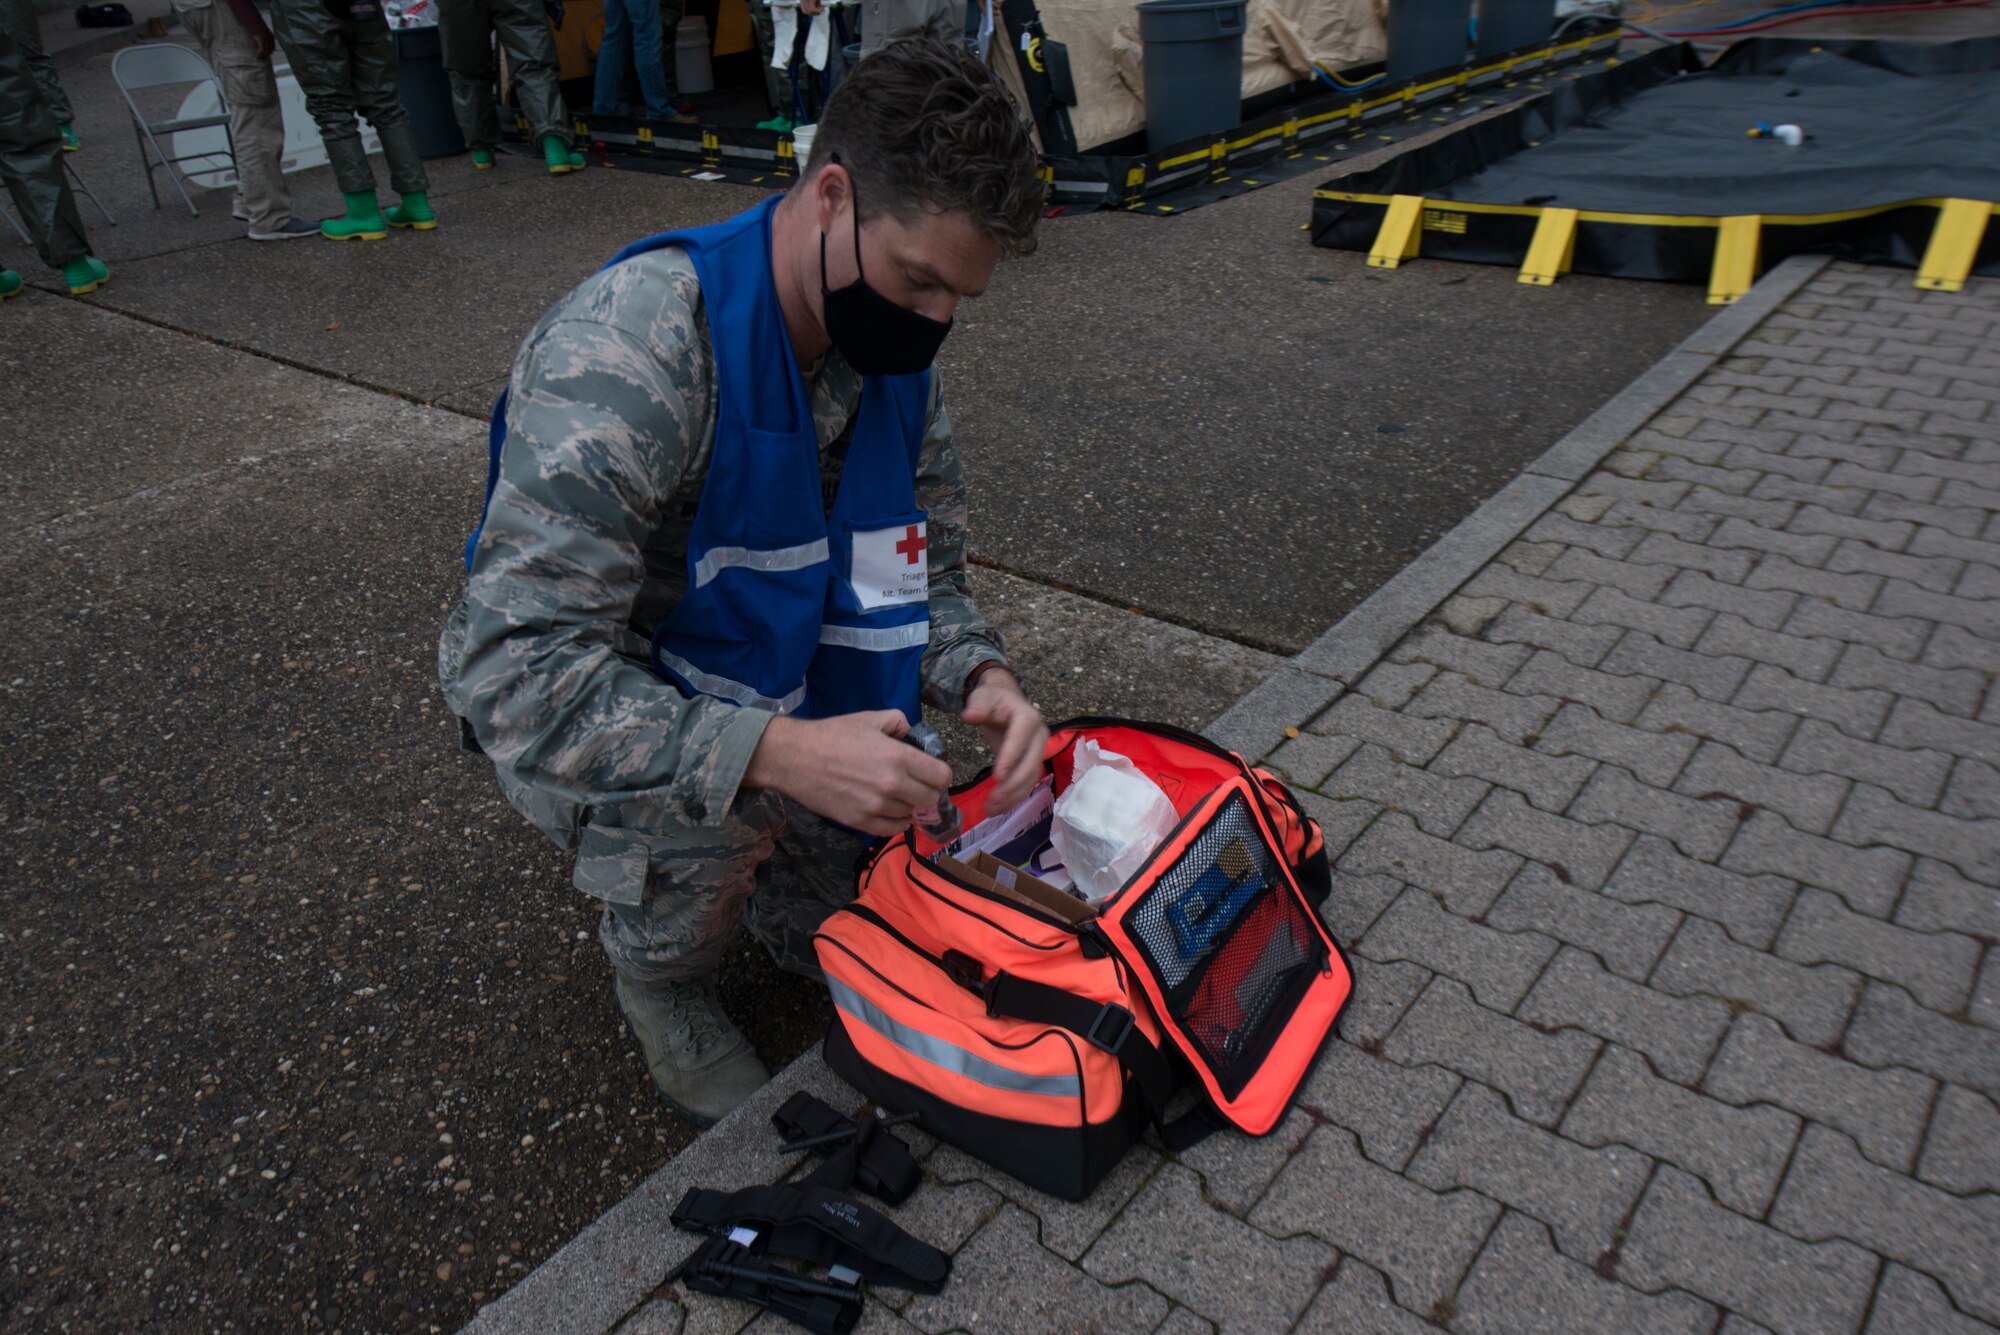 An Airmen obtains medical supplies.